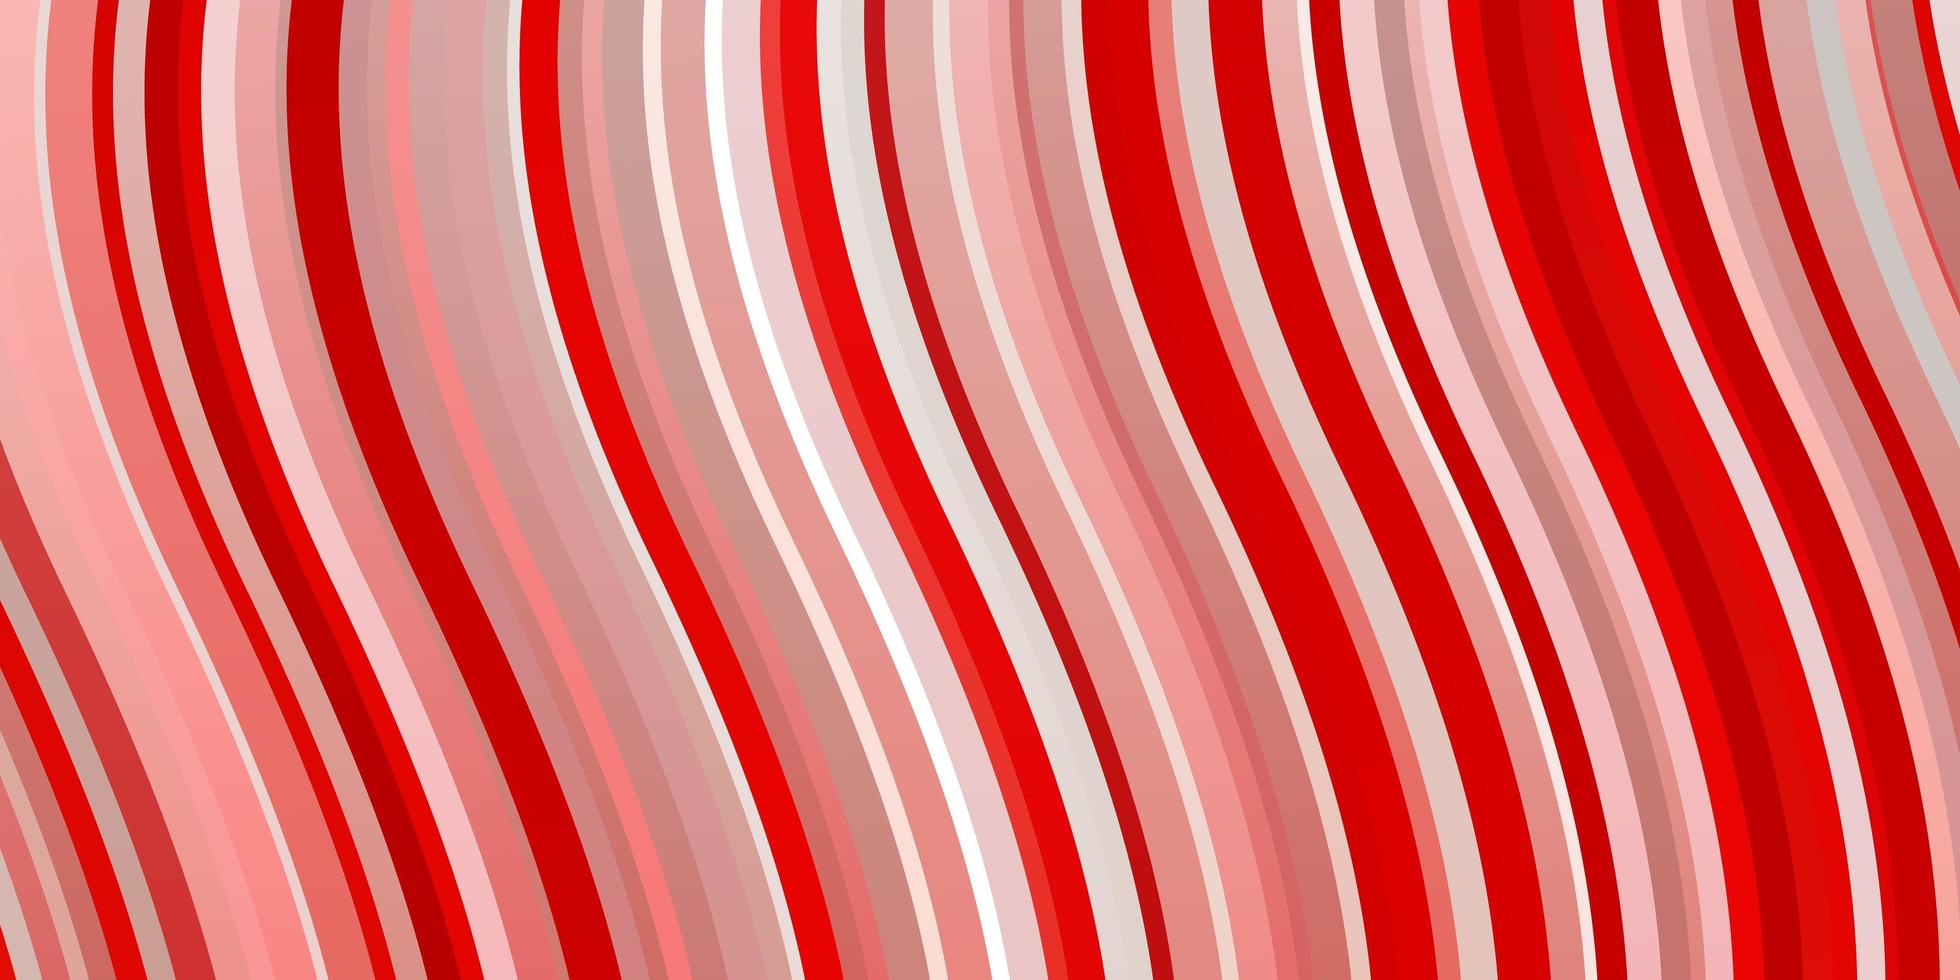 Fondo de vector rojo claro con líneas torcidas ilustración colorida que consiste en un patrón de curvas para anuncios comerciales